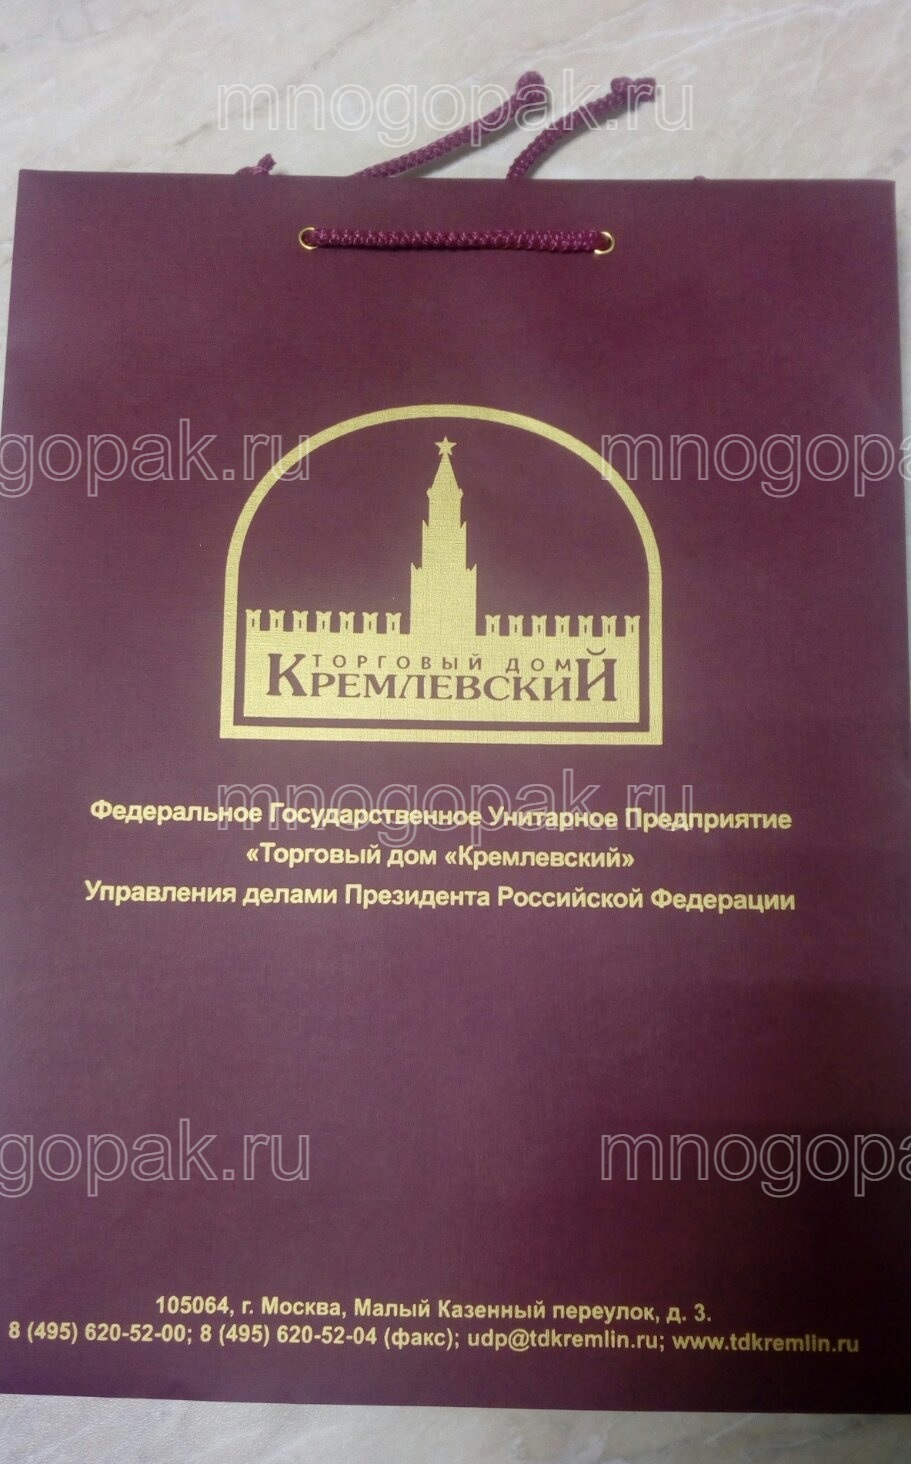 Пакет для Кремлевского Торгового Дома